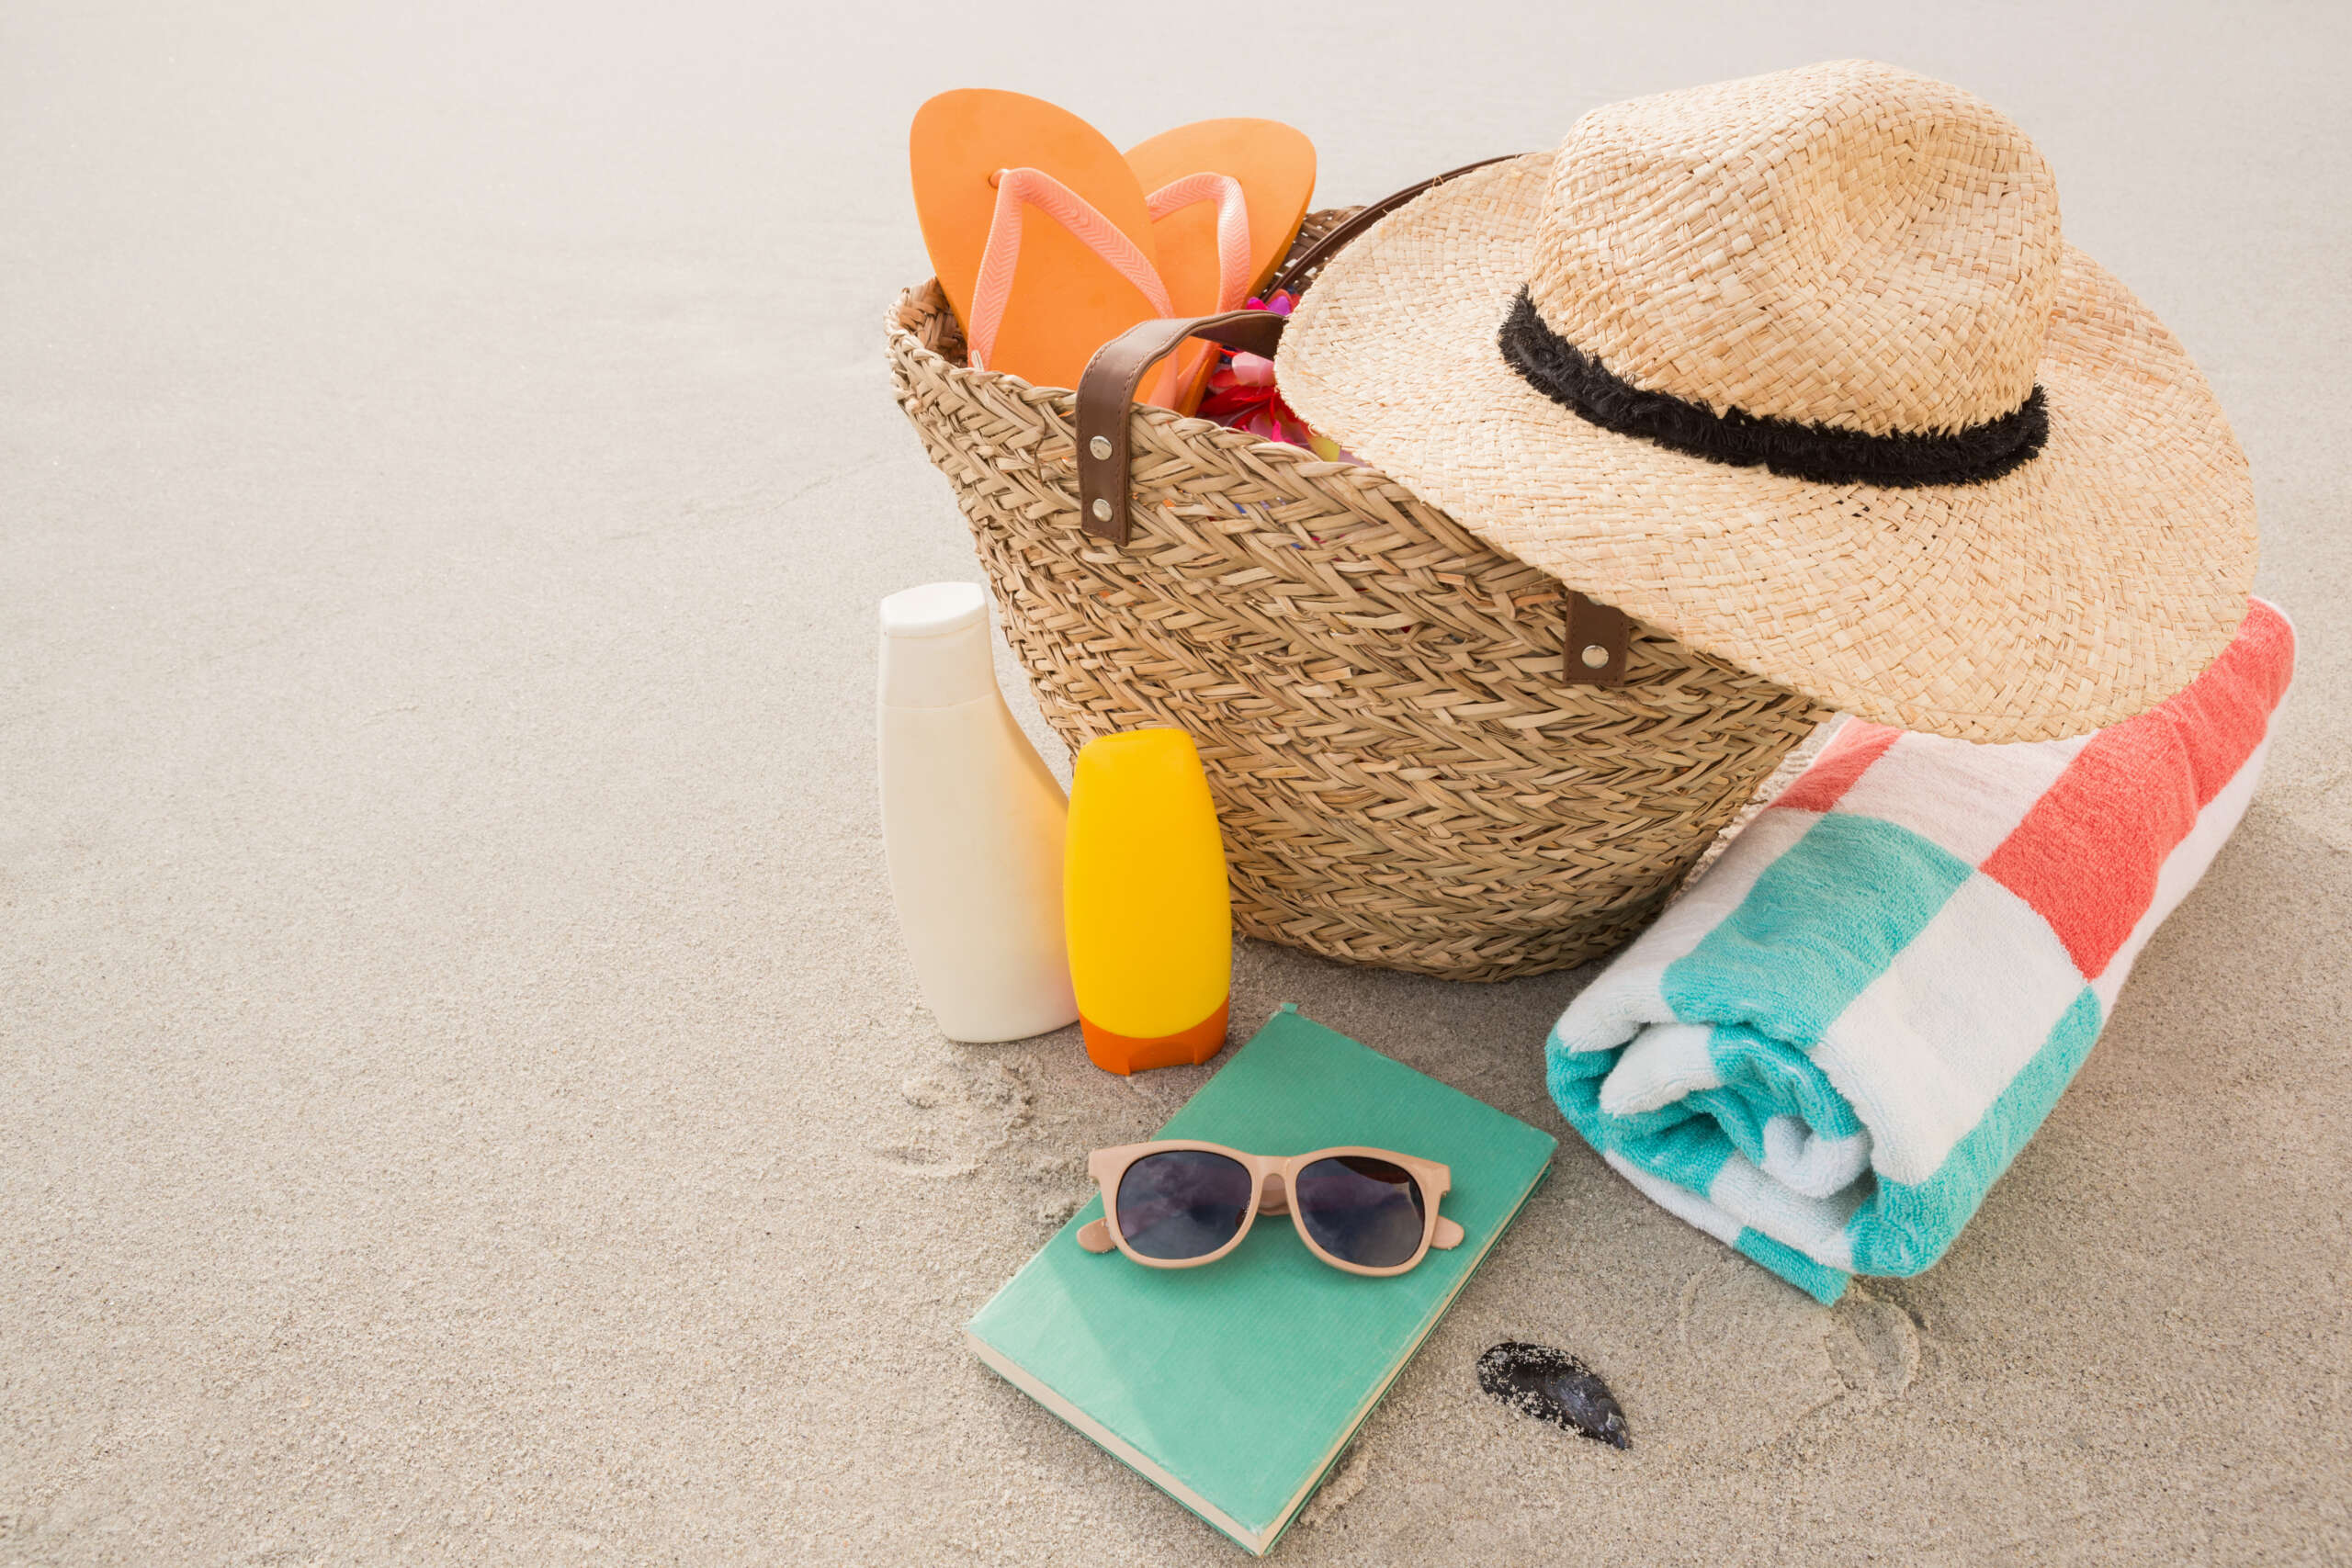 Acessórios na praia como filtro solar, chinelos, ooculos de sol, bolsa de praia